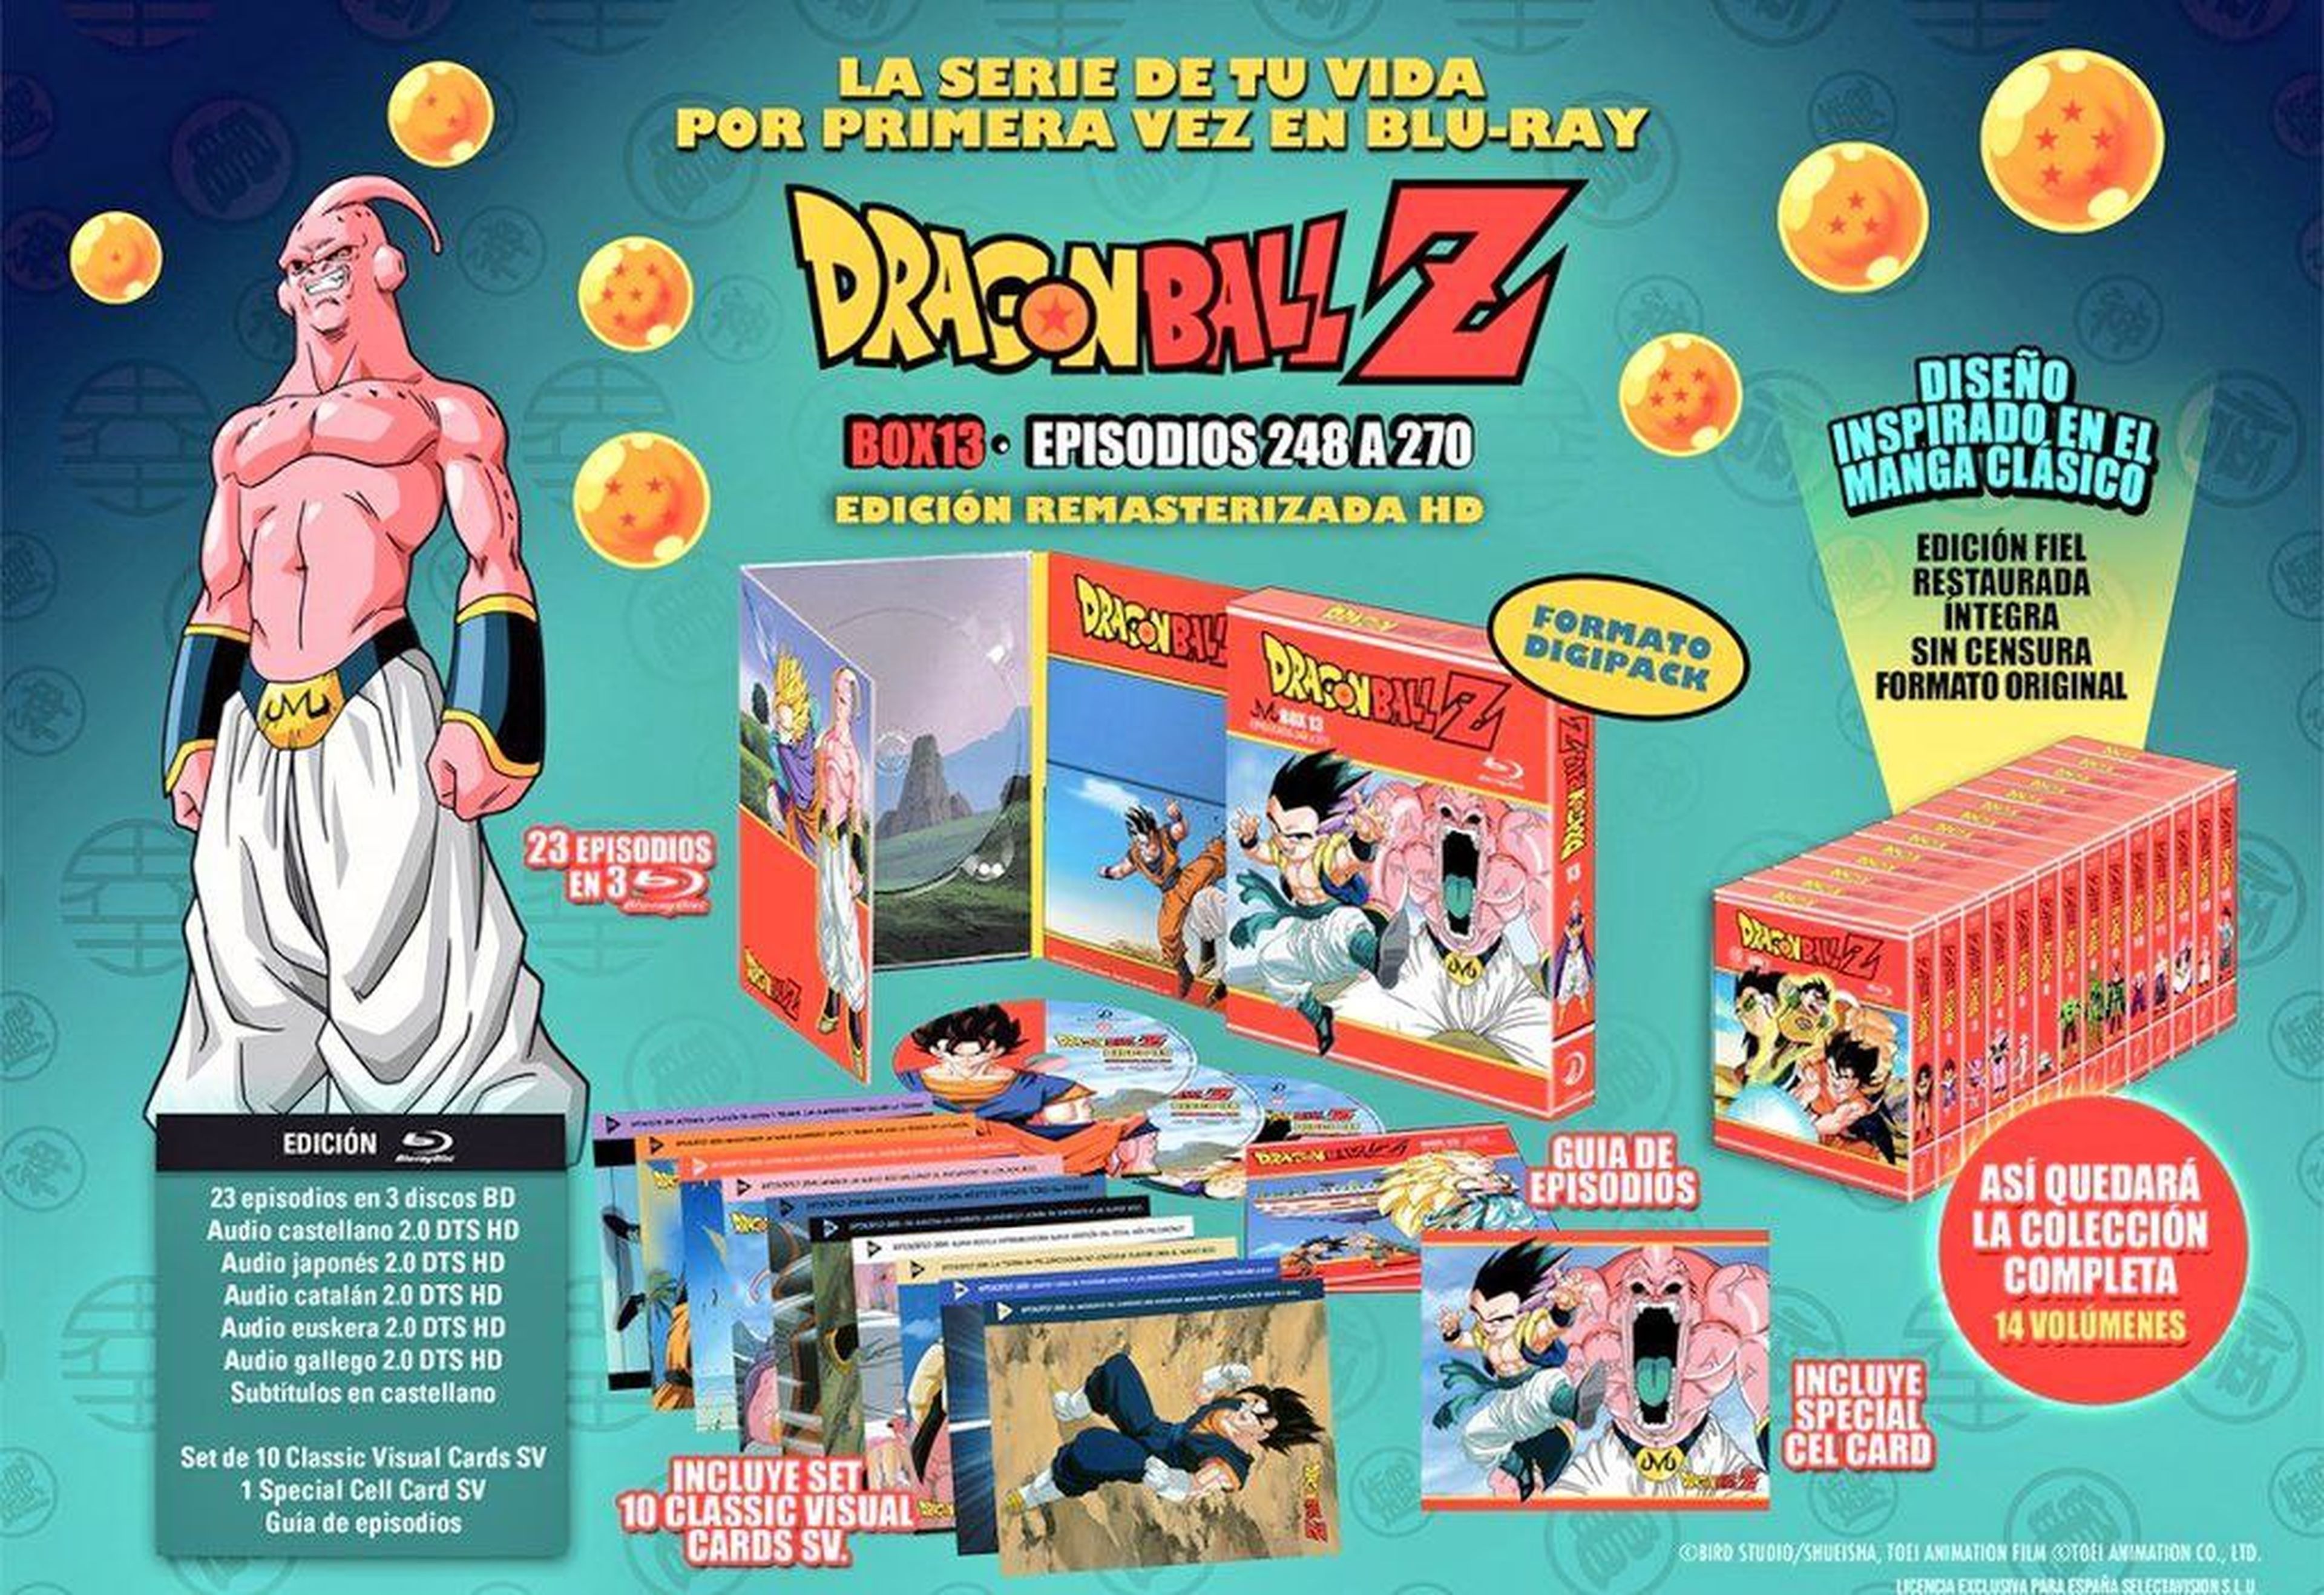 Dragon Ball Z - Portada y fecha de lanzamiento del Box 13 de la serie en Blu-ray. ¡Gotenks y Vegetto en HD!